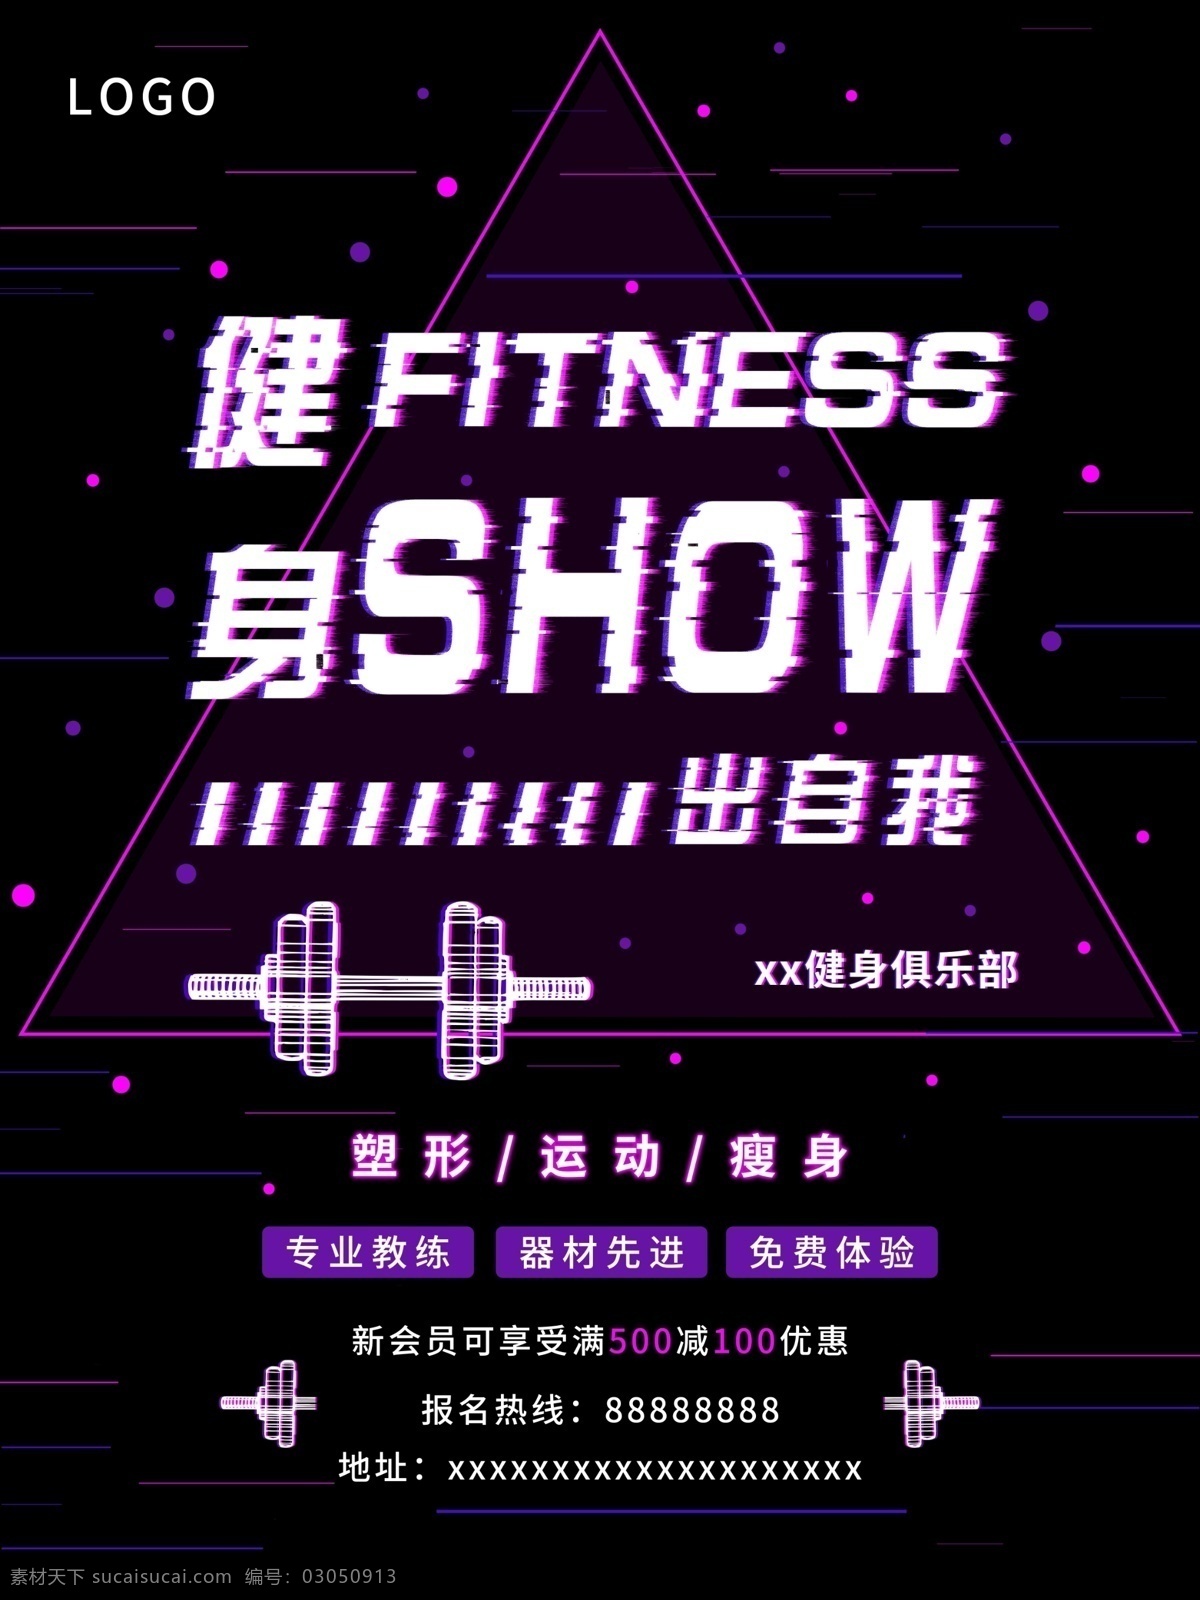 平面 运动 健身 俱乐部 抖 音 故障 风 商业 海报 减肥 瘦身 紫色 健康 健身俱乐部 塑形 show 健身器材 抖音故障风